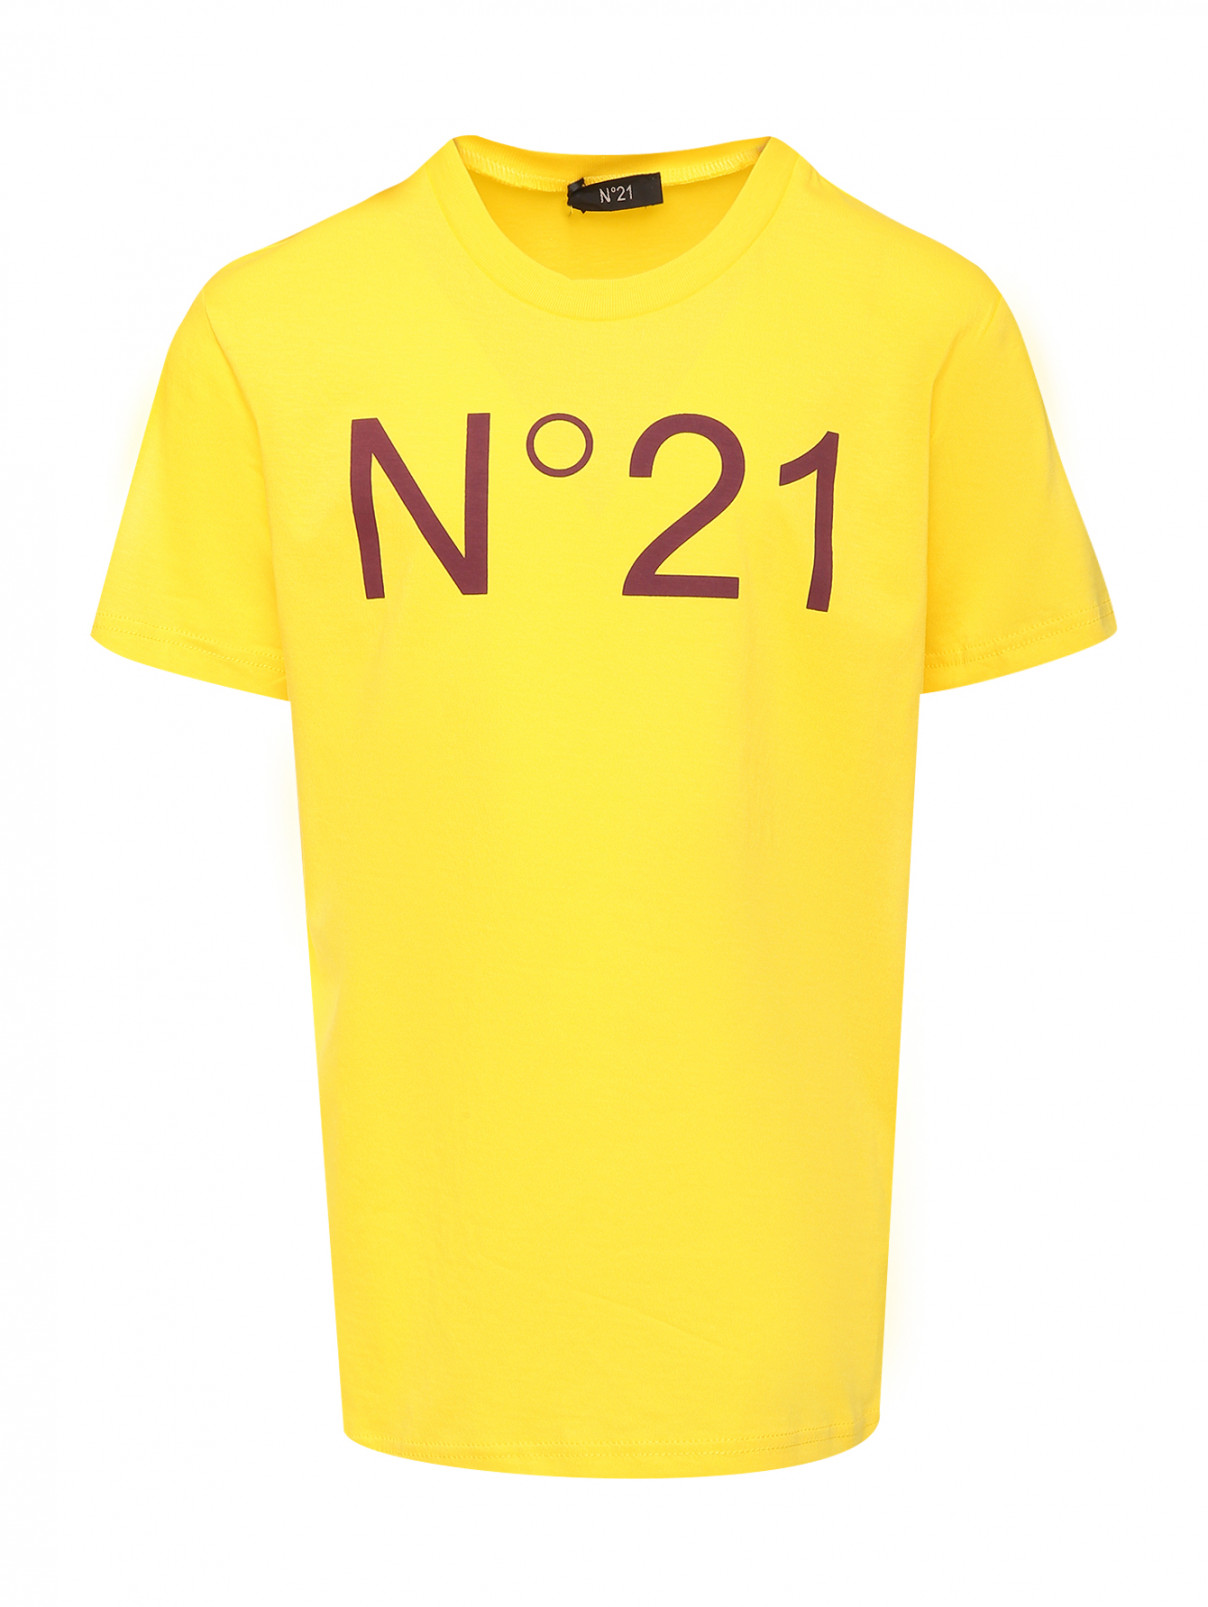 Футболка с принтом из хлопка N21  –  Общий вид  – Цвет:  Желтый